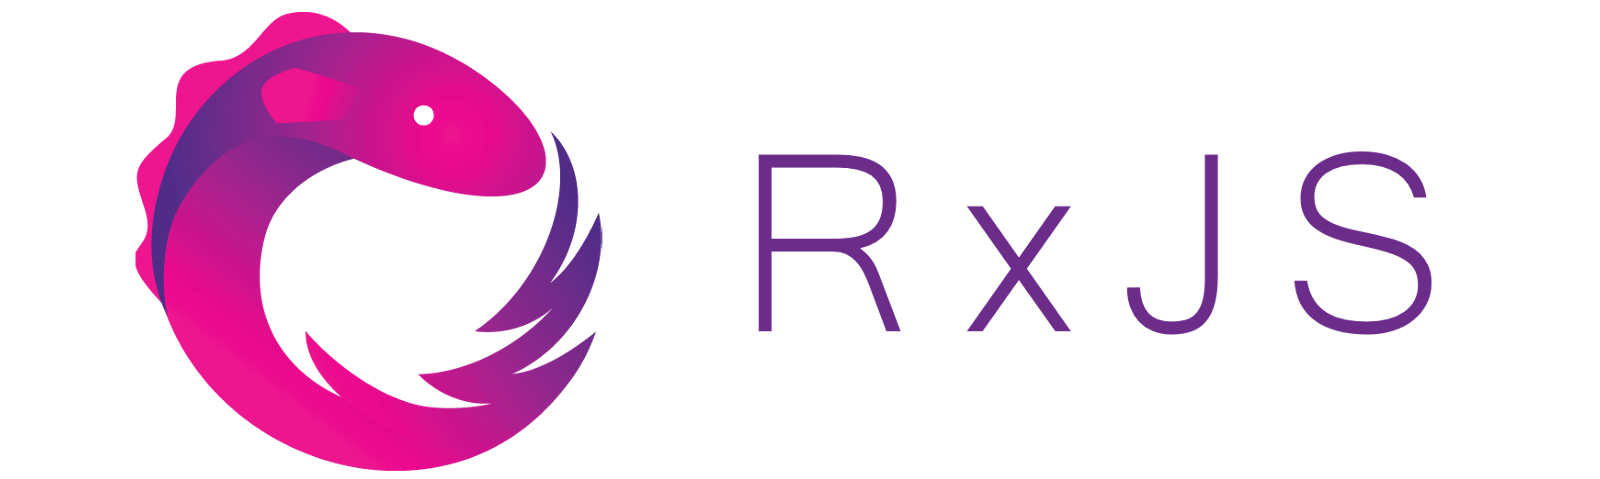 rxjs logo